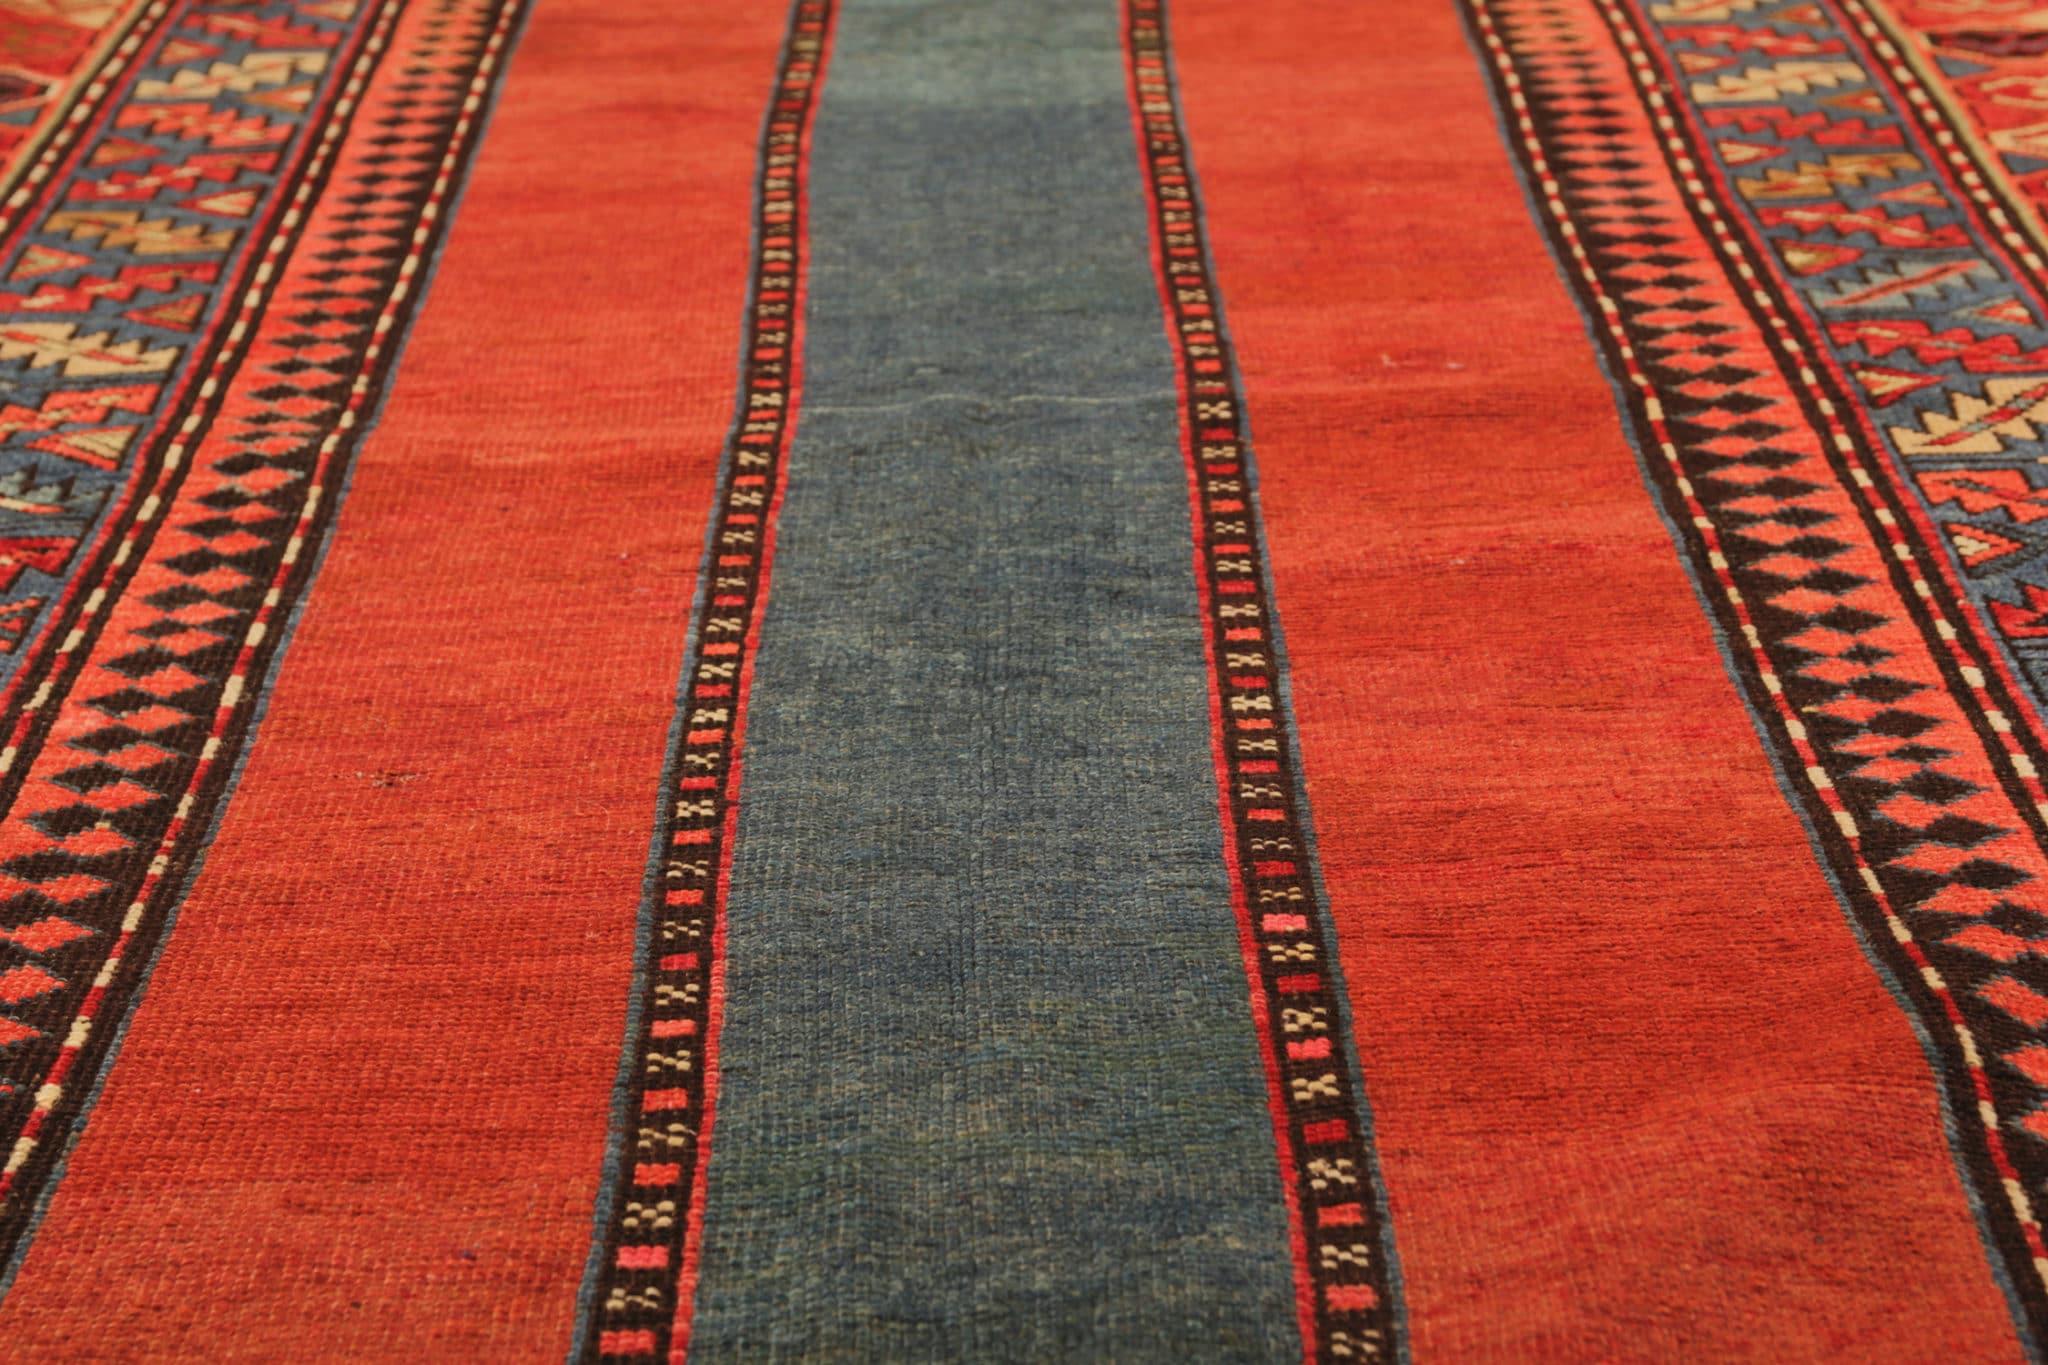 Dieser seltene antike Teppich aus dem Trueing-Gebiet ist ein wahres Meisterwerk, das sich durch exquisite Handwerkskunst und zeitlose Schönheit auszeichnet. Mit Präzision und Sorgfalt handgeknüpft, zeigt dieser Teppich die traditionellen